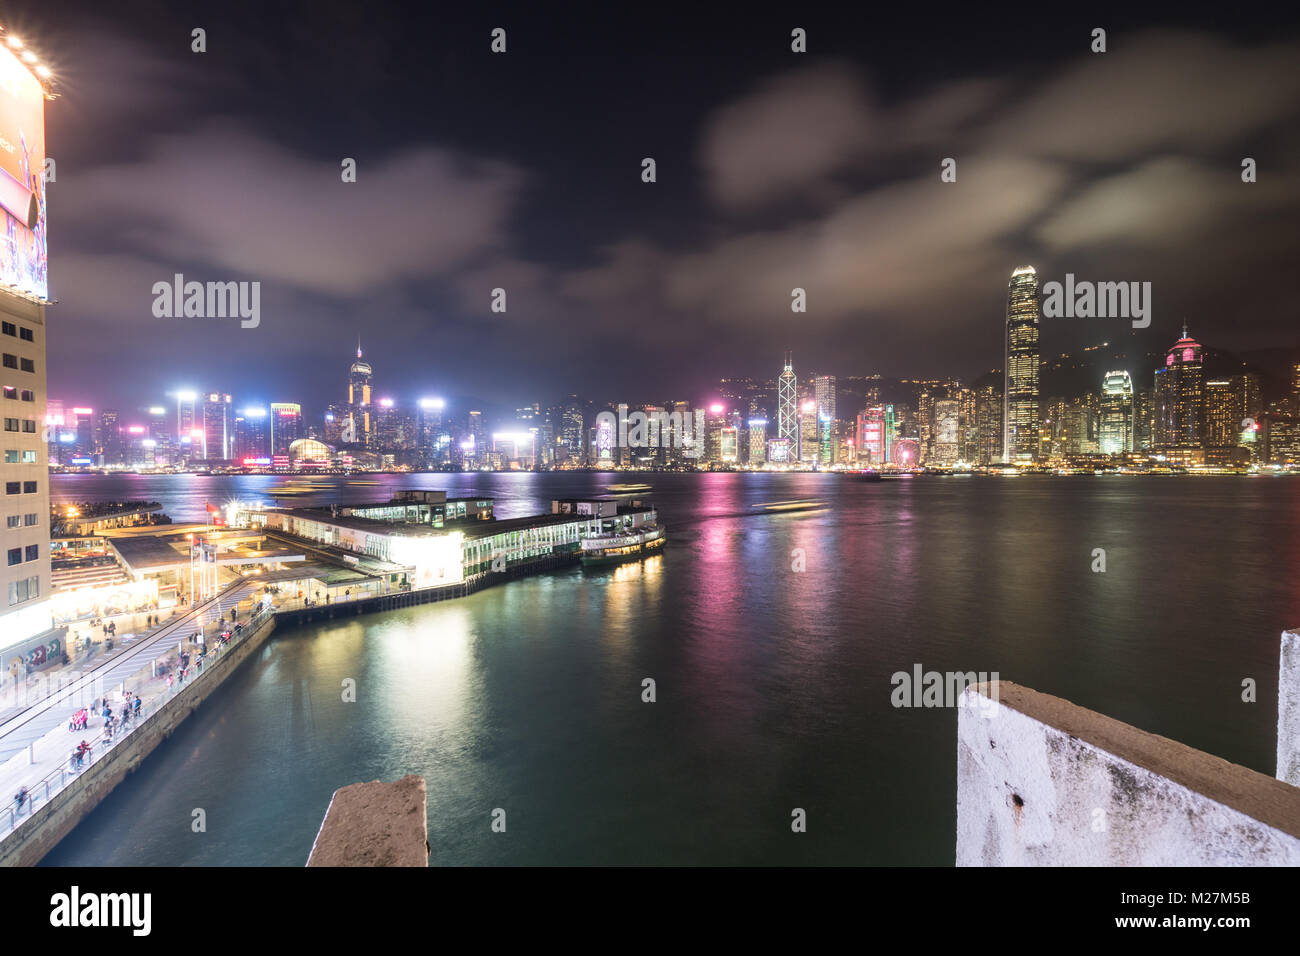 Hong Kong - Le 25 janvier 2018 : Le Star Ferry terminal à Tsim Sha Tsui à Kowloon avec la célèbre île de Hong Kong skyline at night sur le Victoria h Banque D'Images